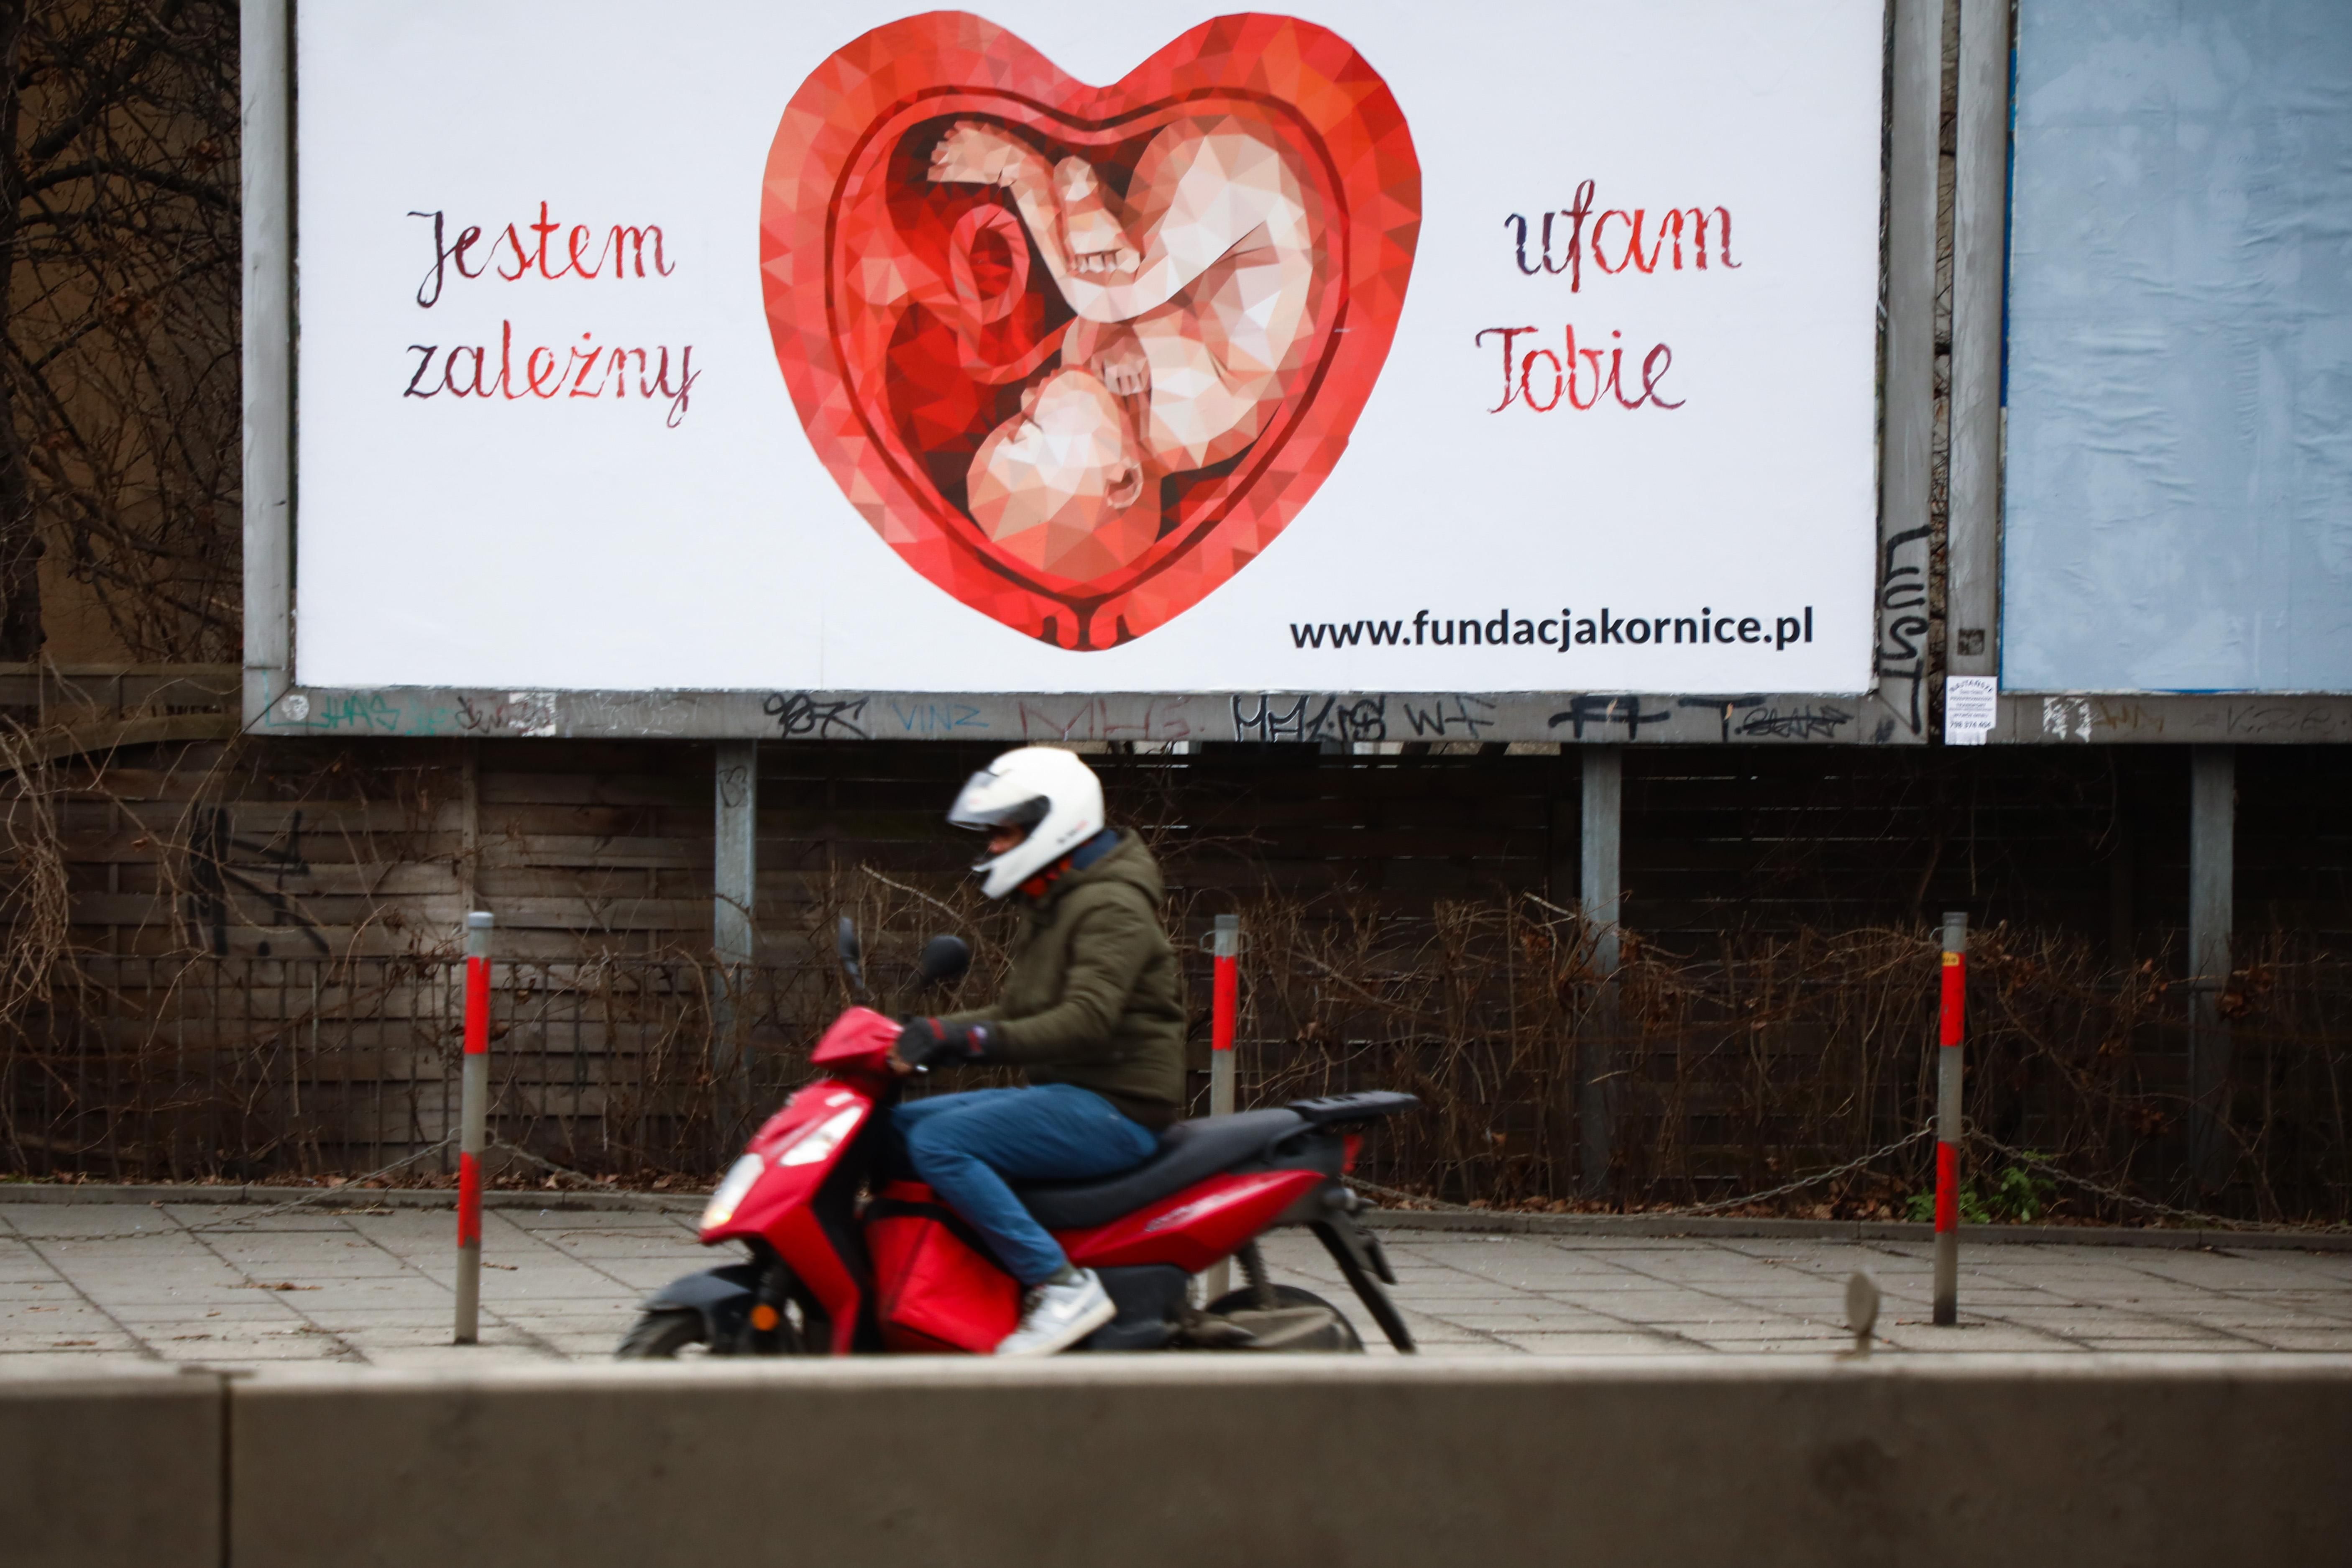 Запрет абортов: в Польше предложили создать женские "комнаты для плача"